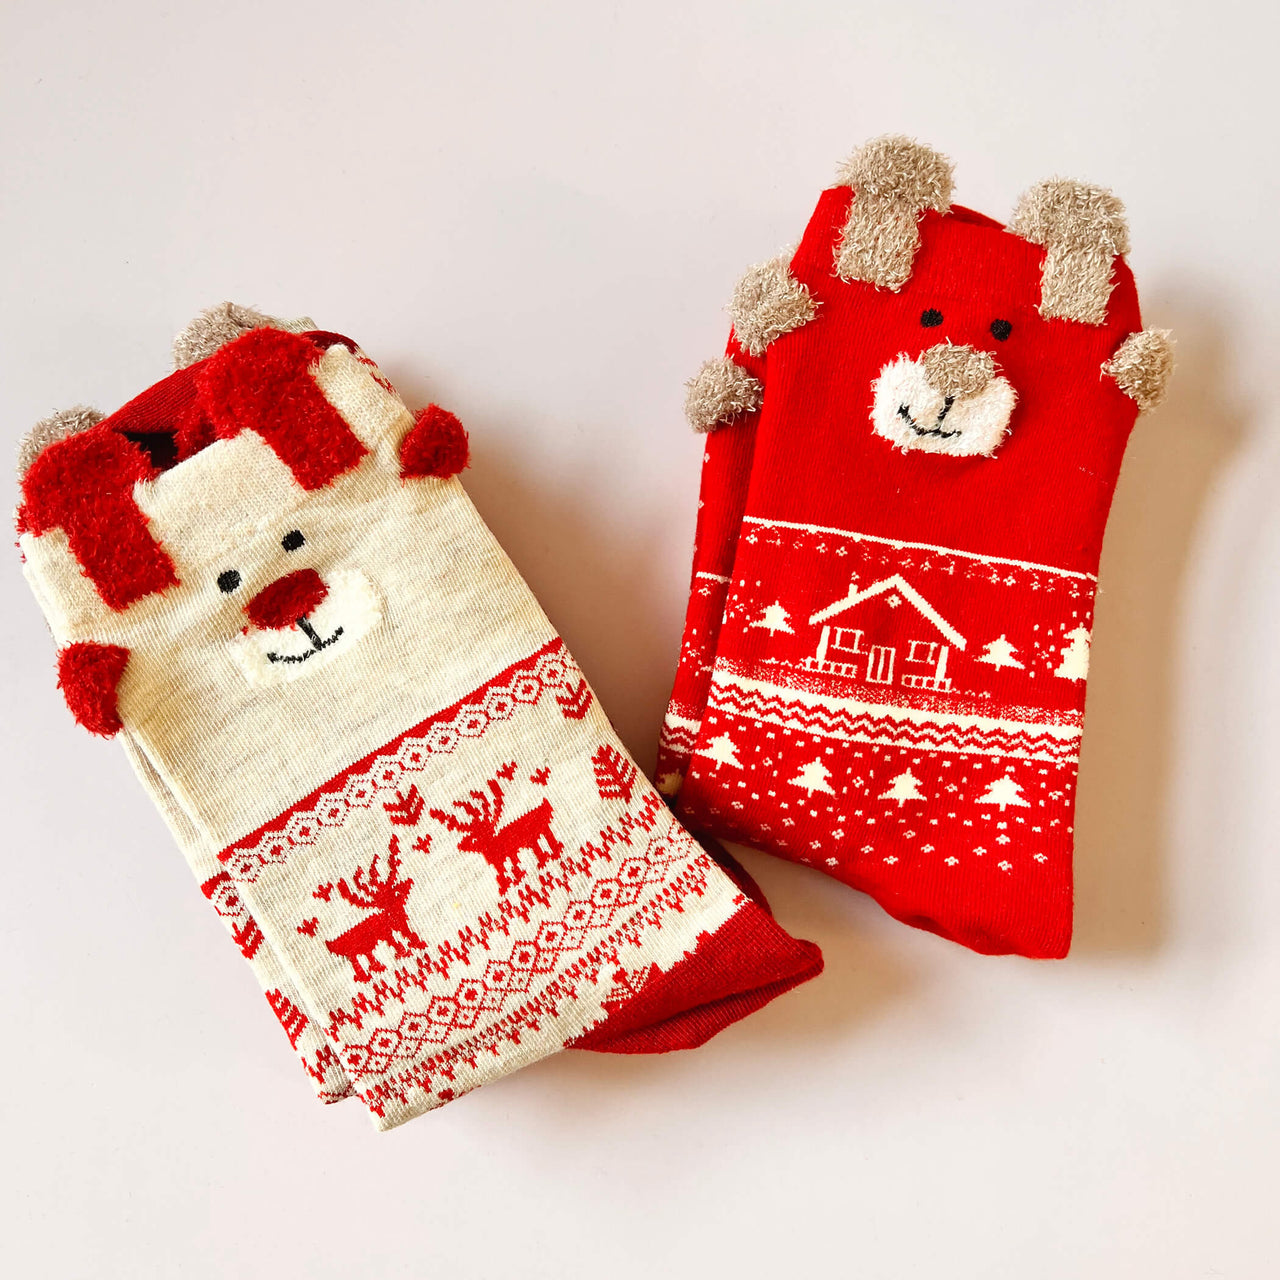 Personalised Christmas Reindeer Socks Box Gift | Xmas Gift For Her | Novelty Socks